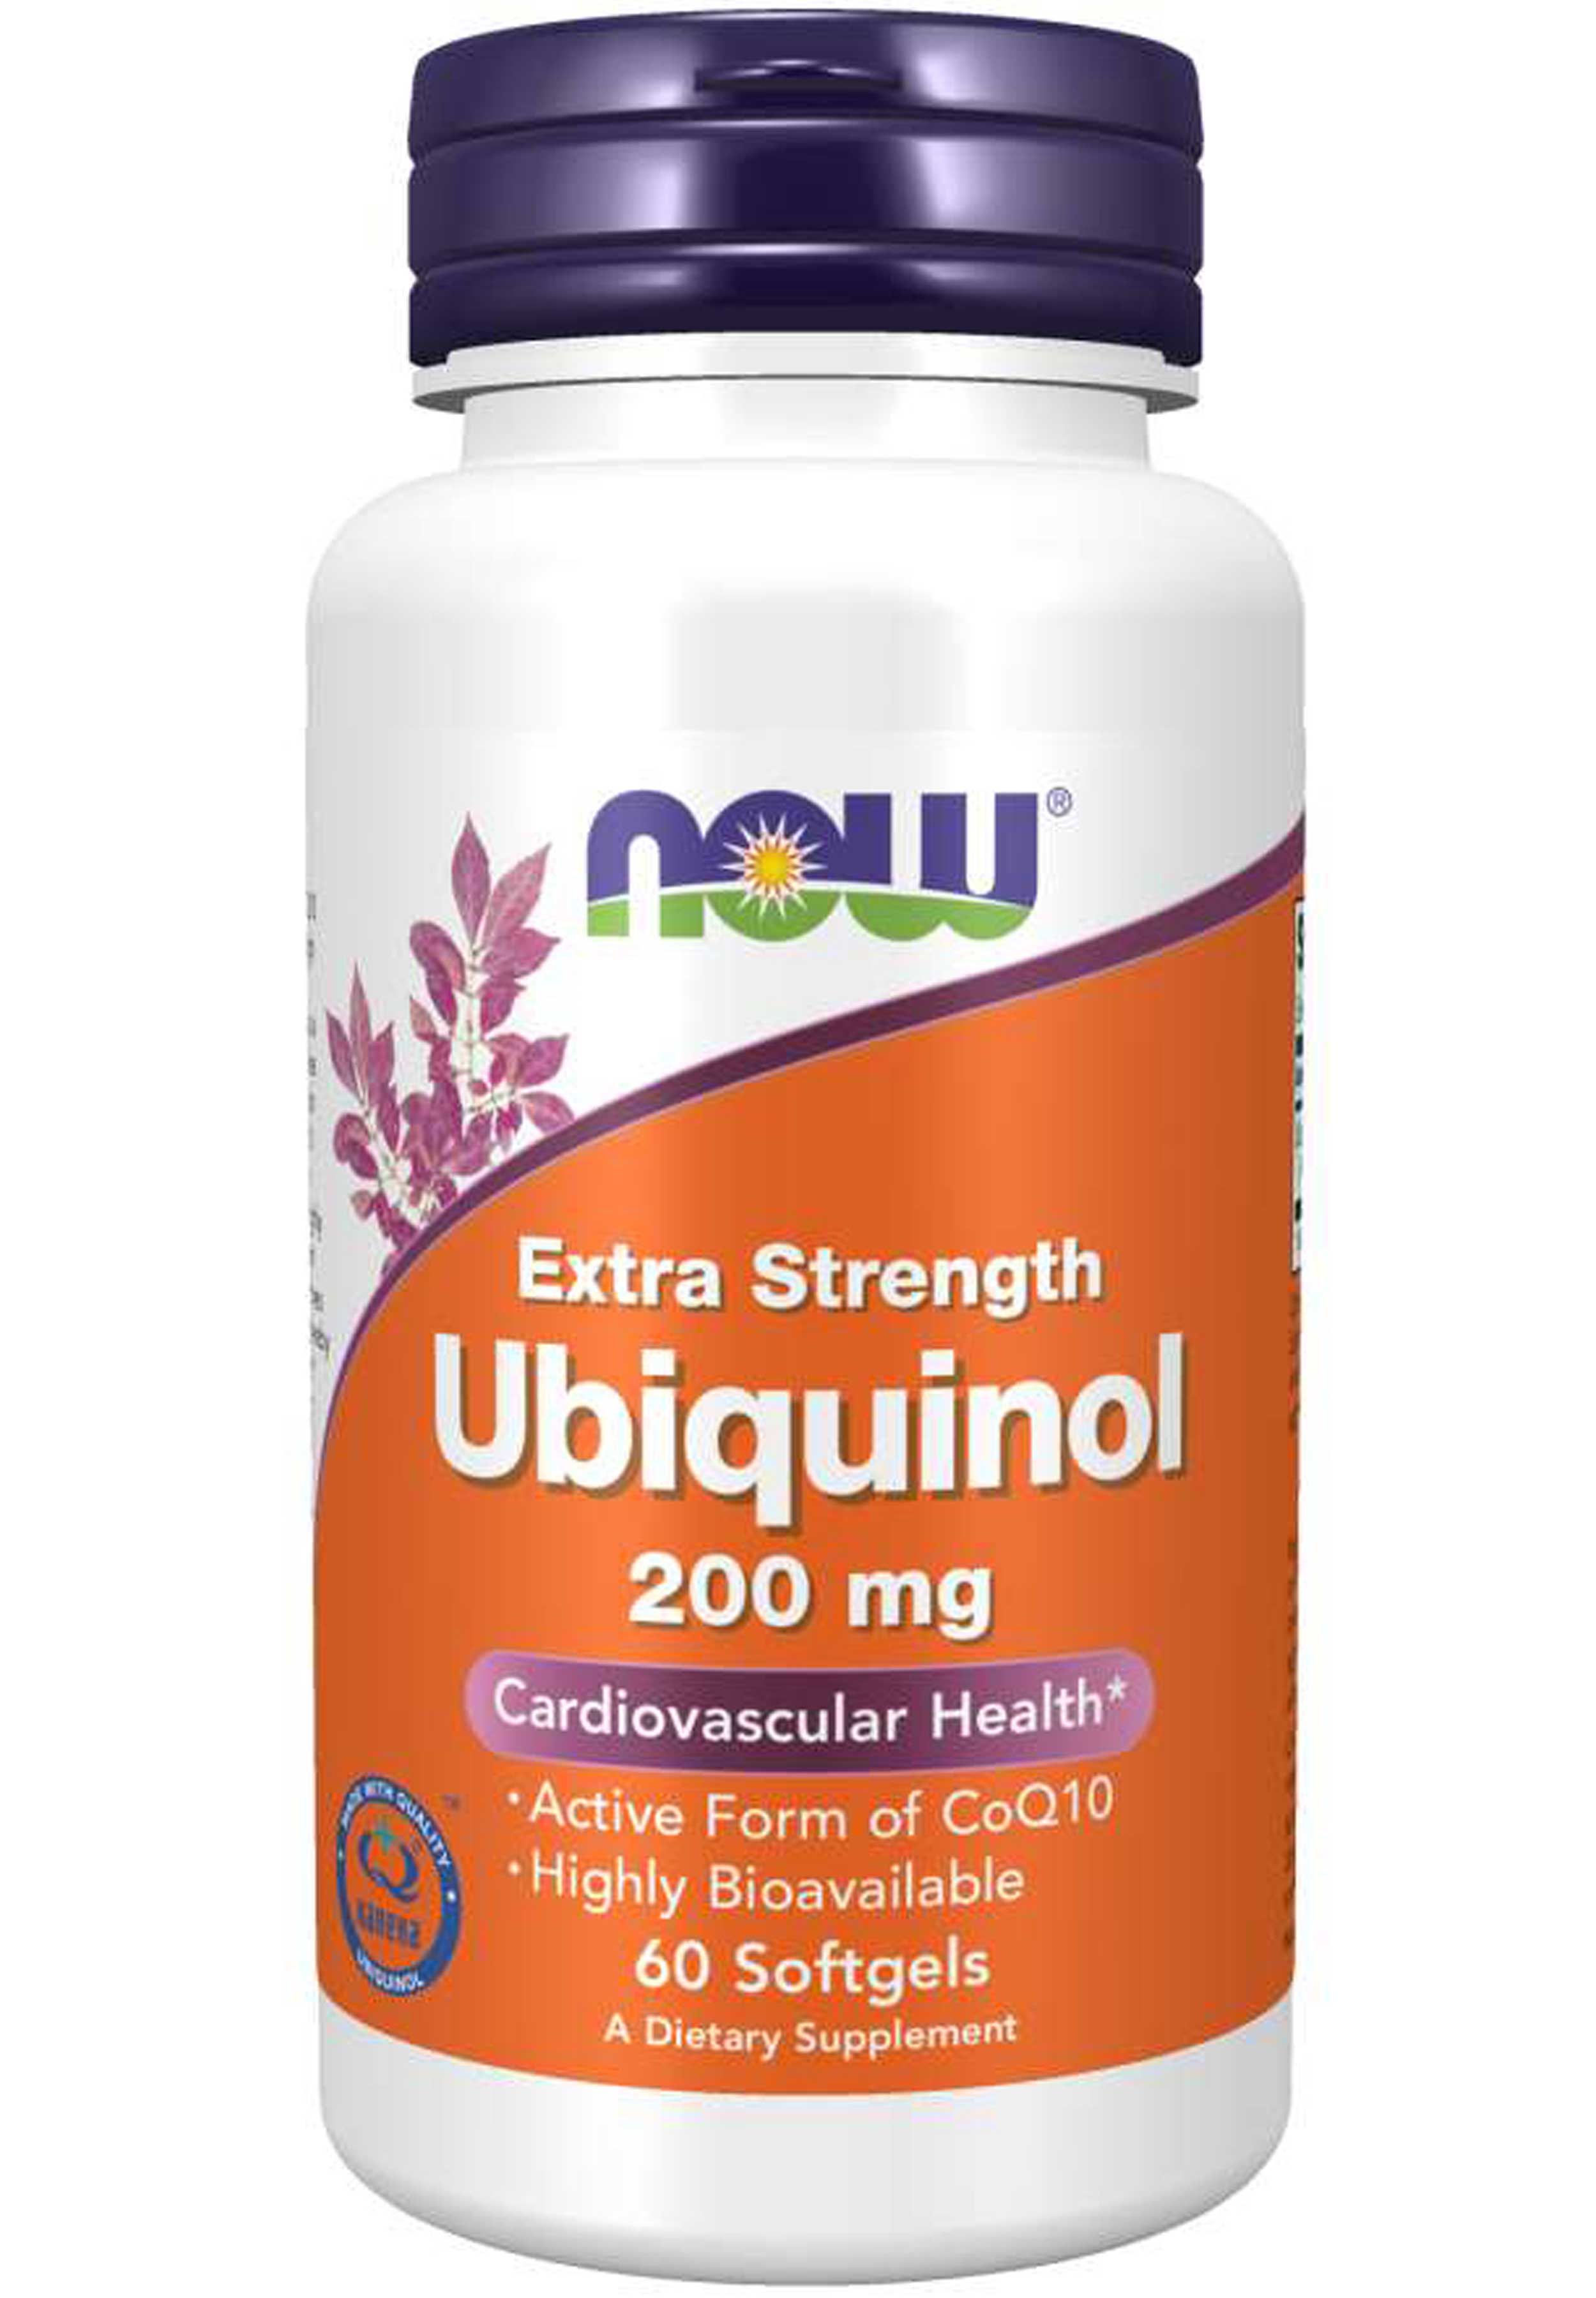 NOW Ubiquinol Extra Strength 200 mg